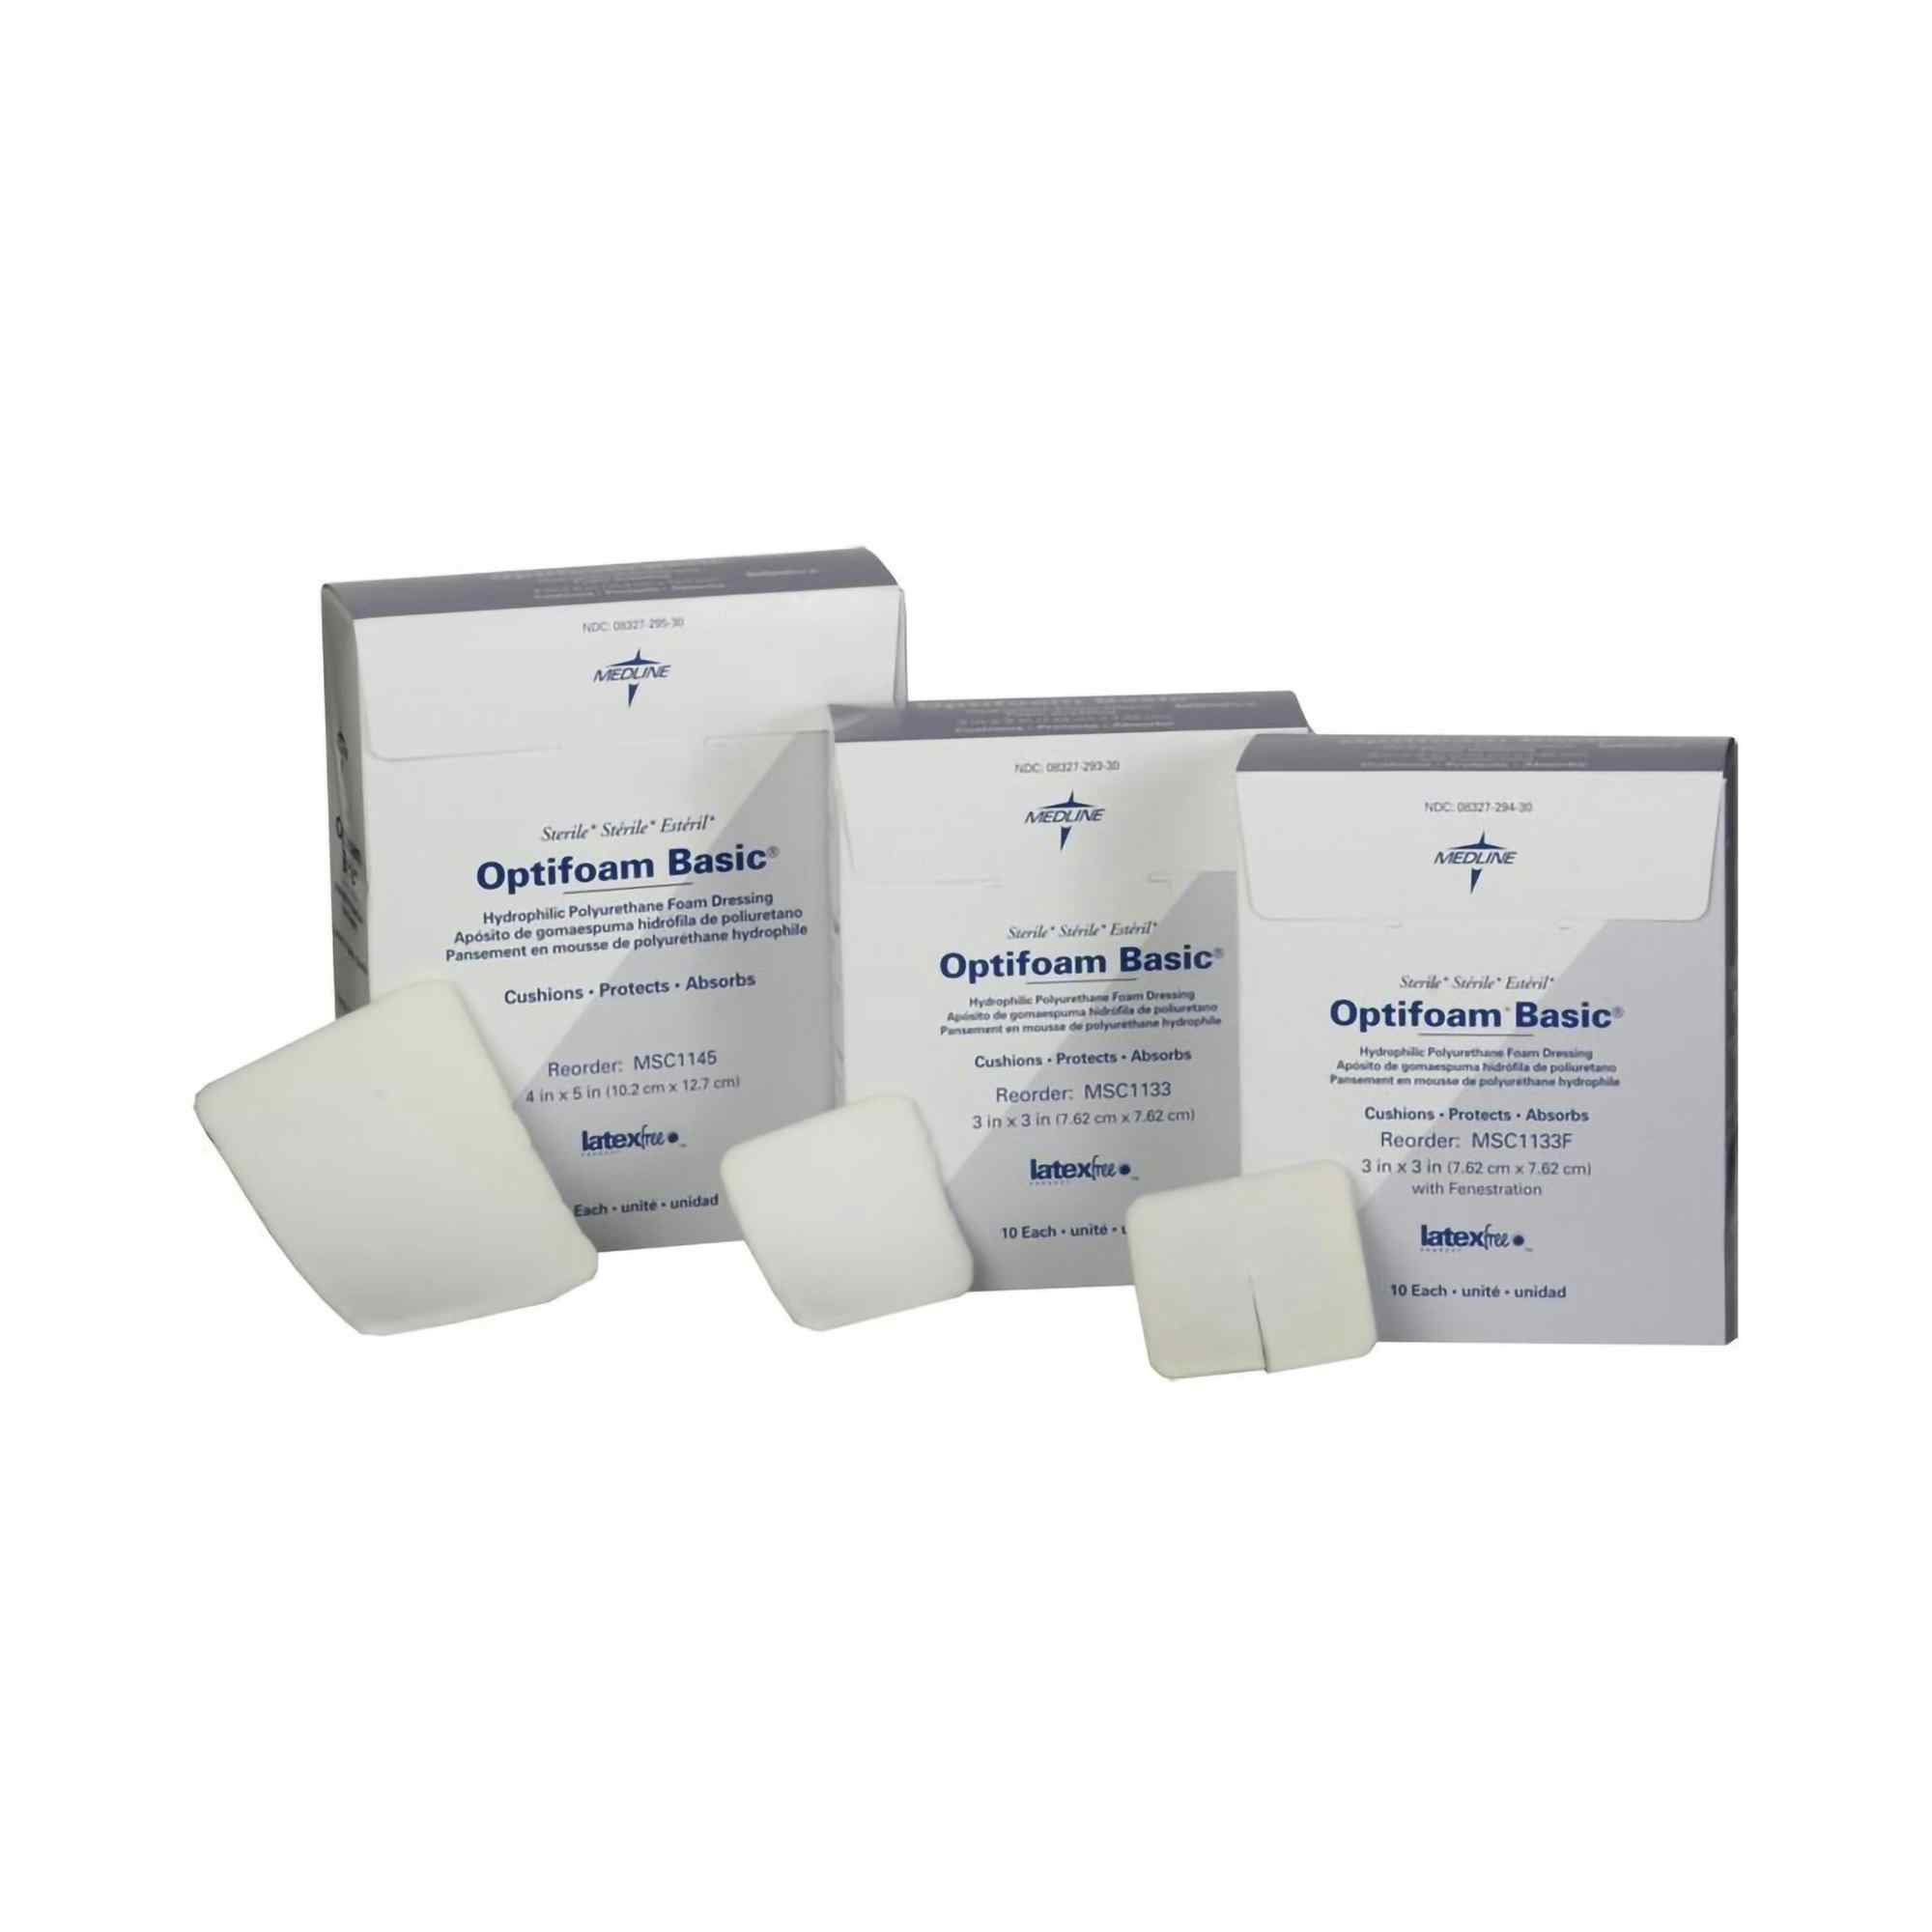 Optifoam Basic Hydrophilic Polyurethane Foam Dressing with Fenestration, 3 X 3", MSC1133F, Box of 10